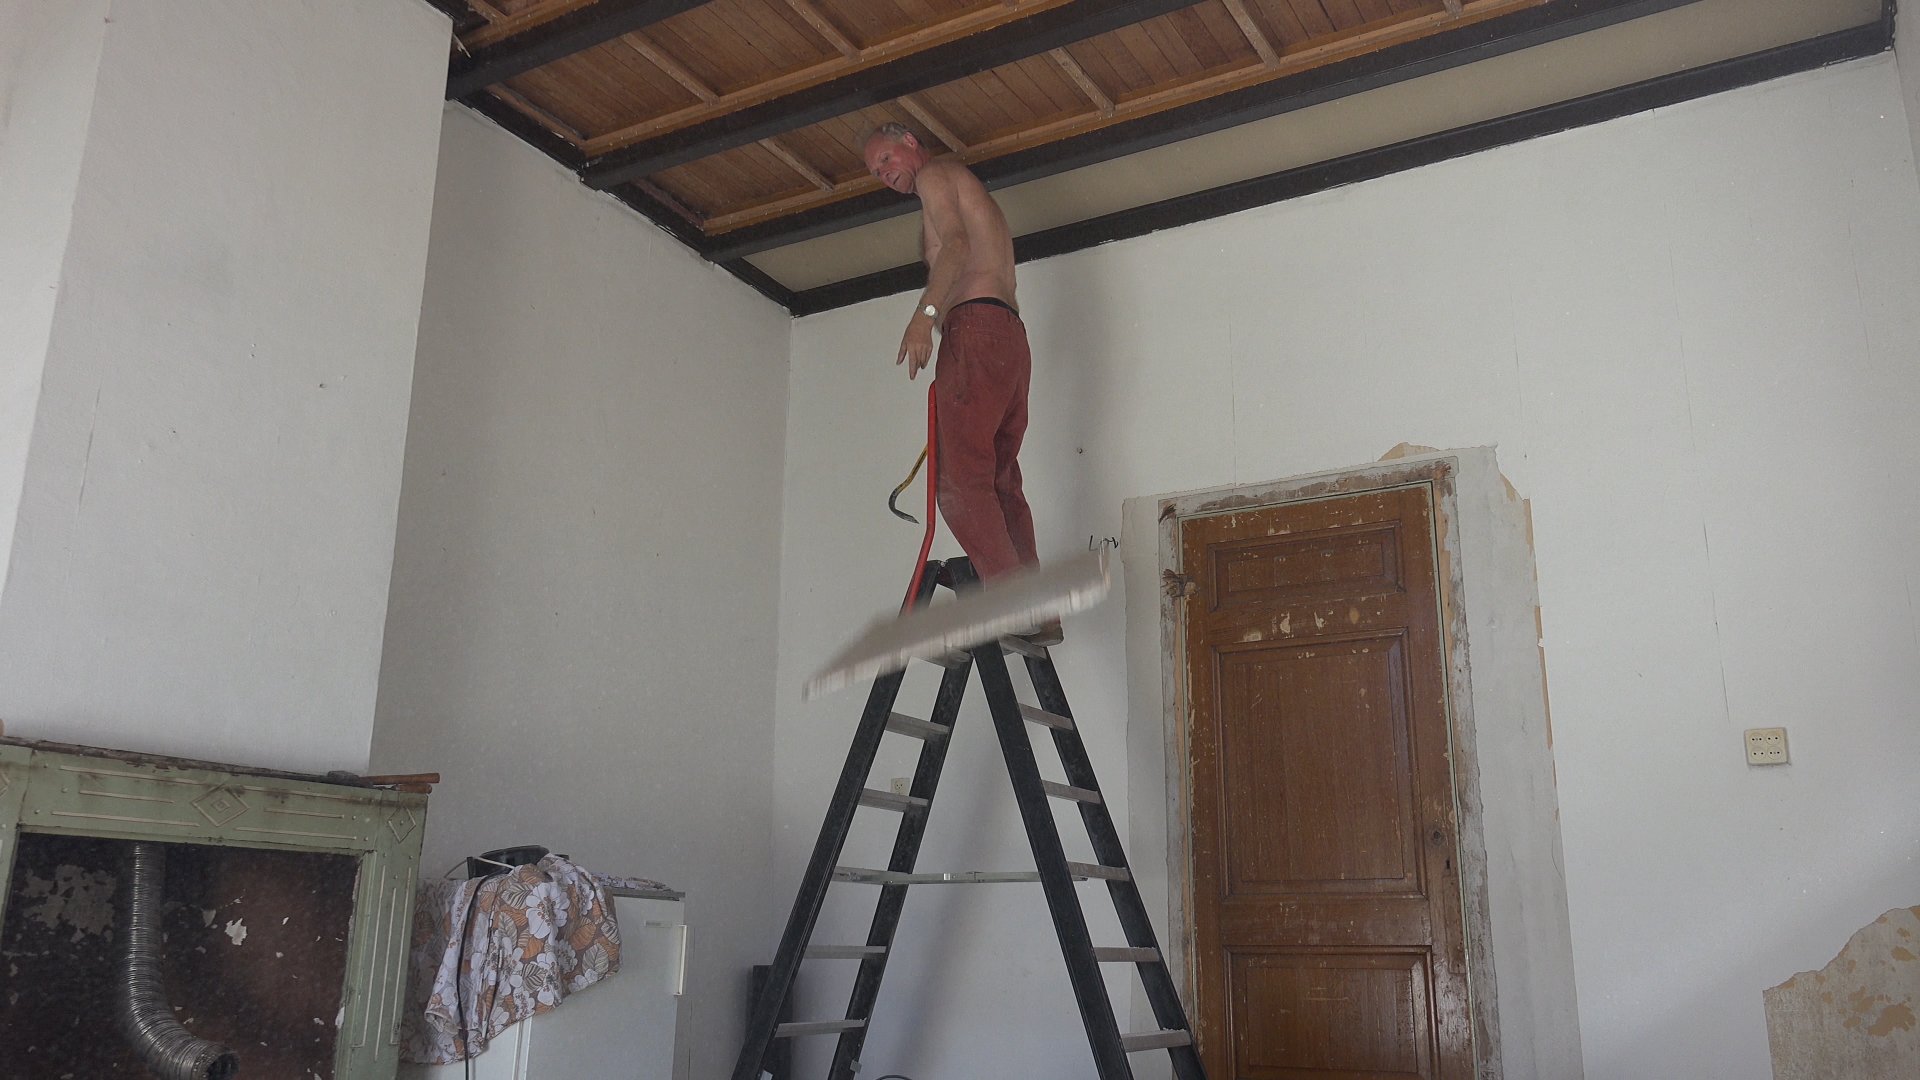 Han sloopt het verlaagde plafond.